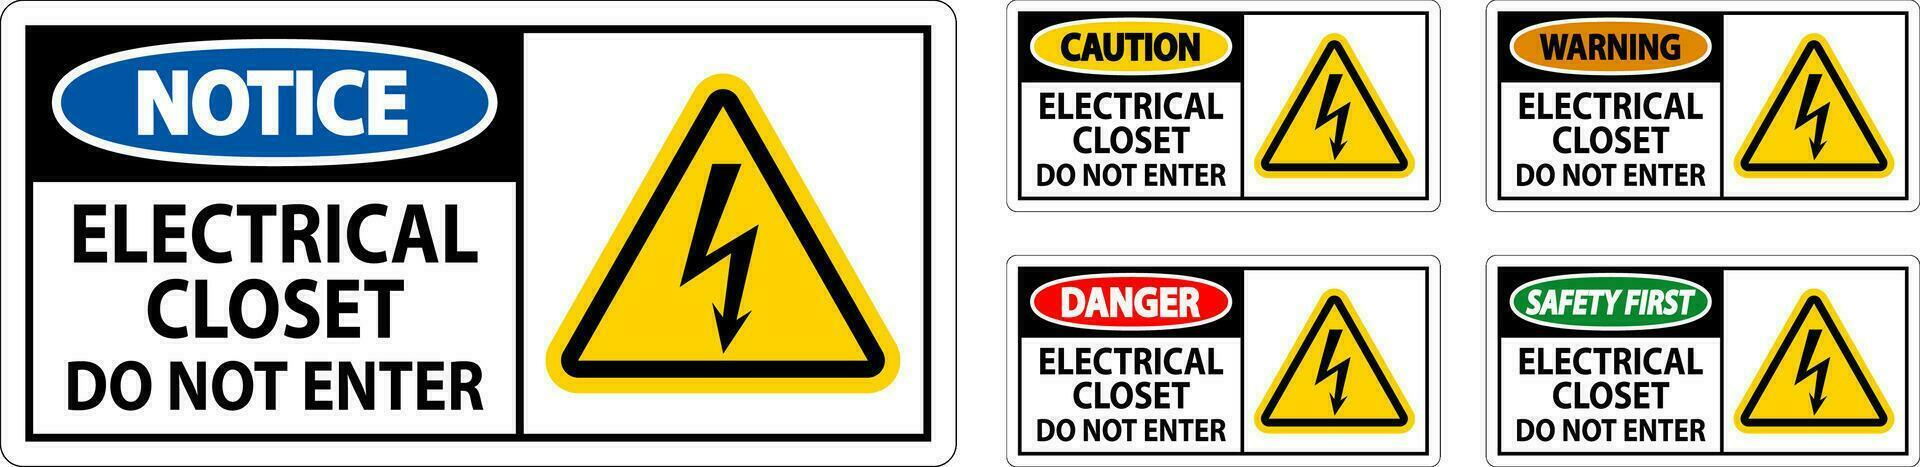 Danger Sign Electrical Closet - Do Not Enter vector